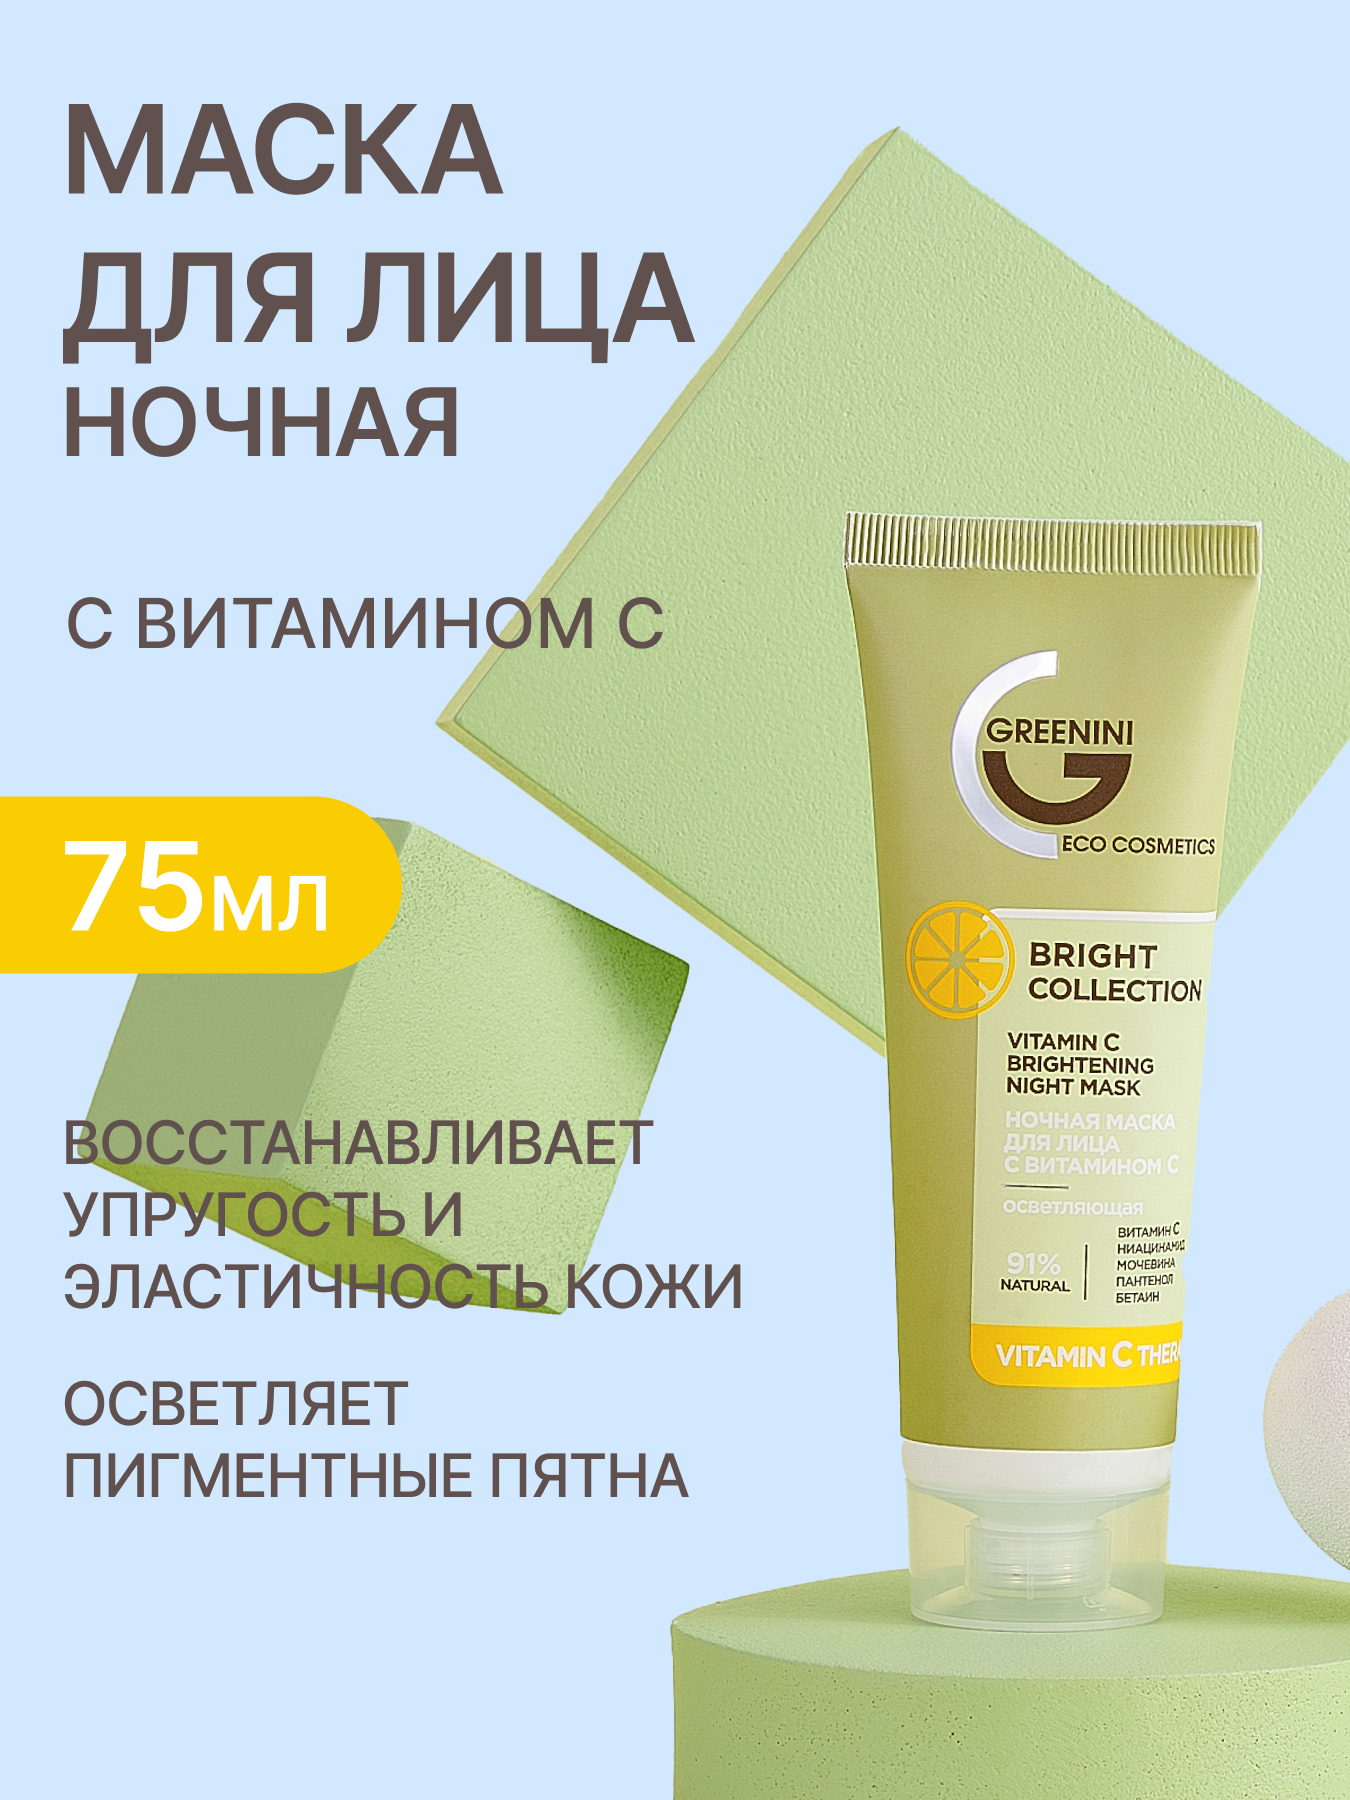 Greenini Ночная маска для лица с витамином С осветляющая для борьбы с неровным тоном кожи 91% Natural 75мл